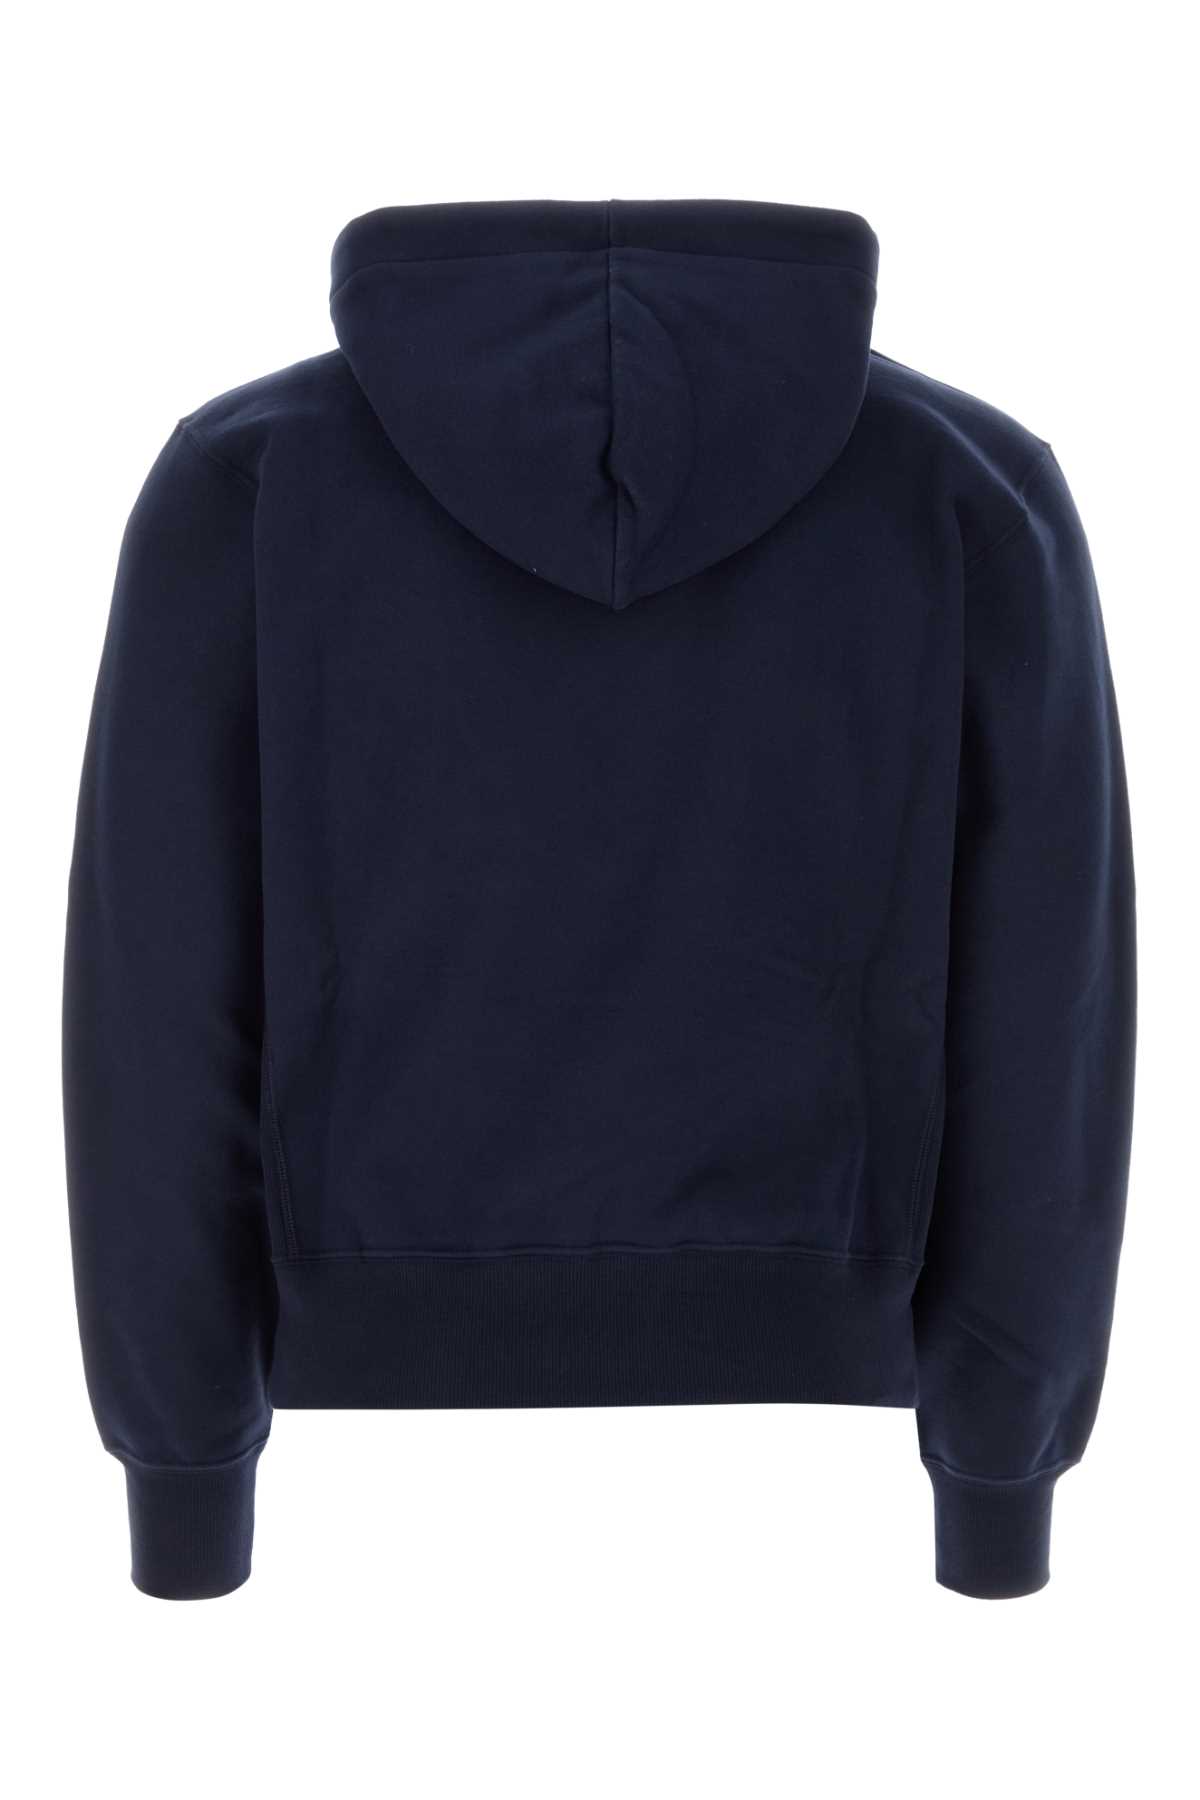 Saint Laurent Midnight Blu Cotton Sweatshirt In Marine